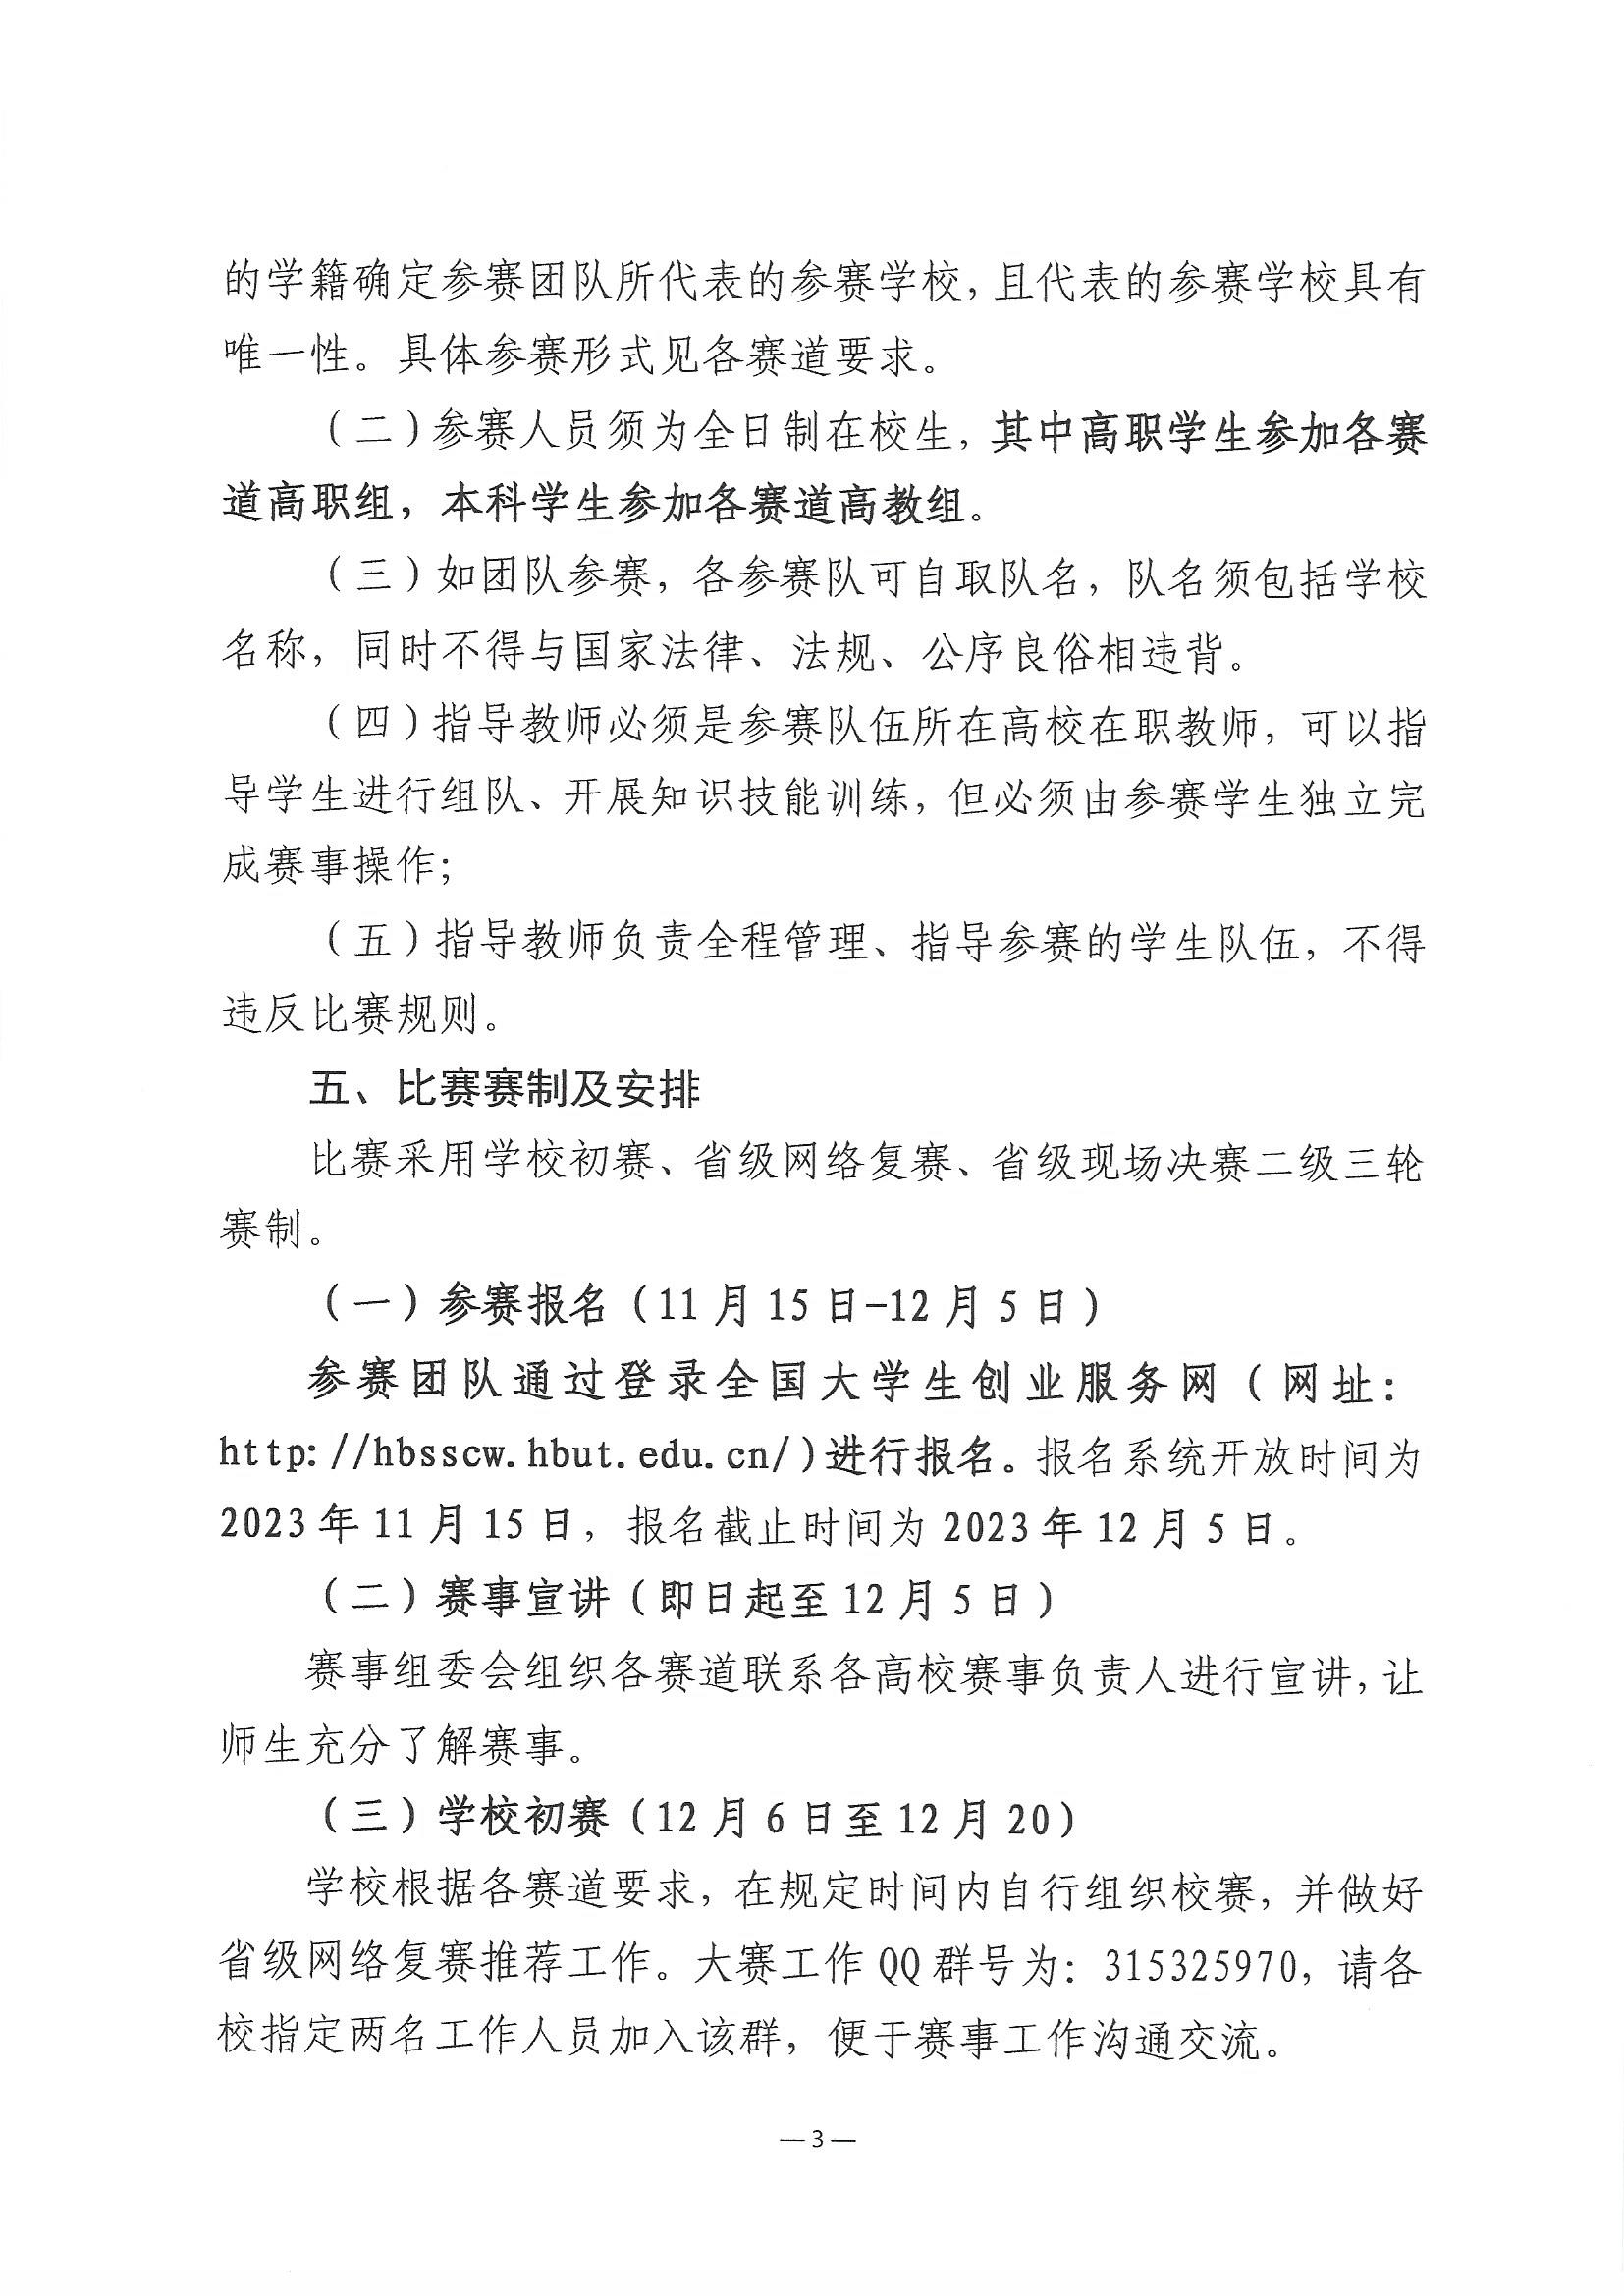 2023.11.9关于举办第三届湖北省大学生信创大赛的通知(1)_页面_3.jpg